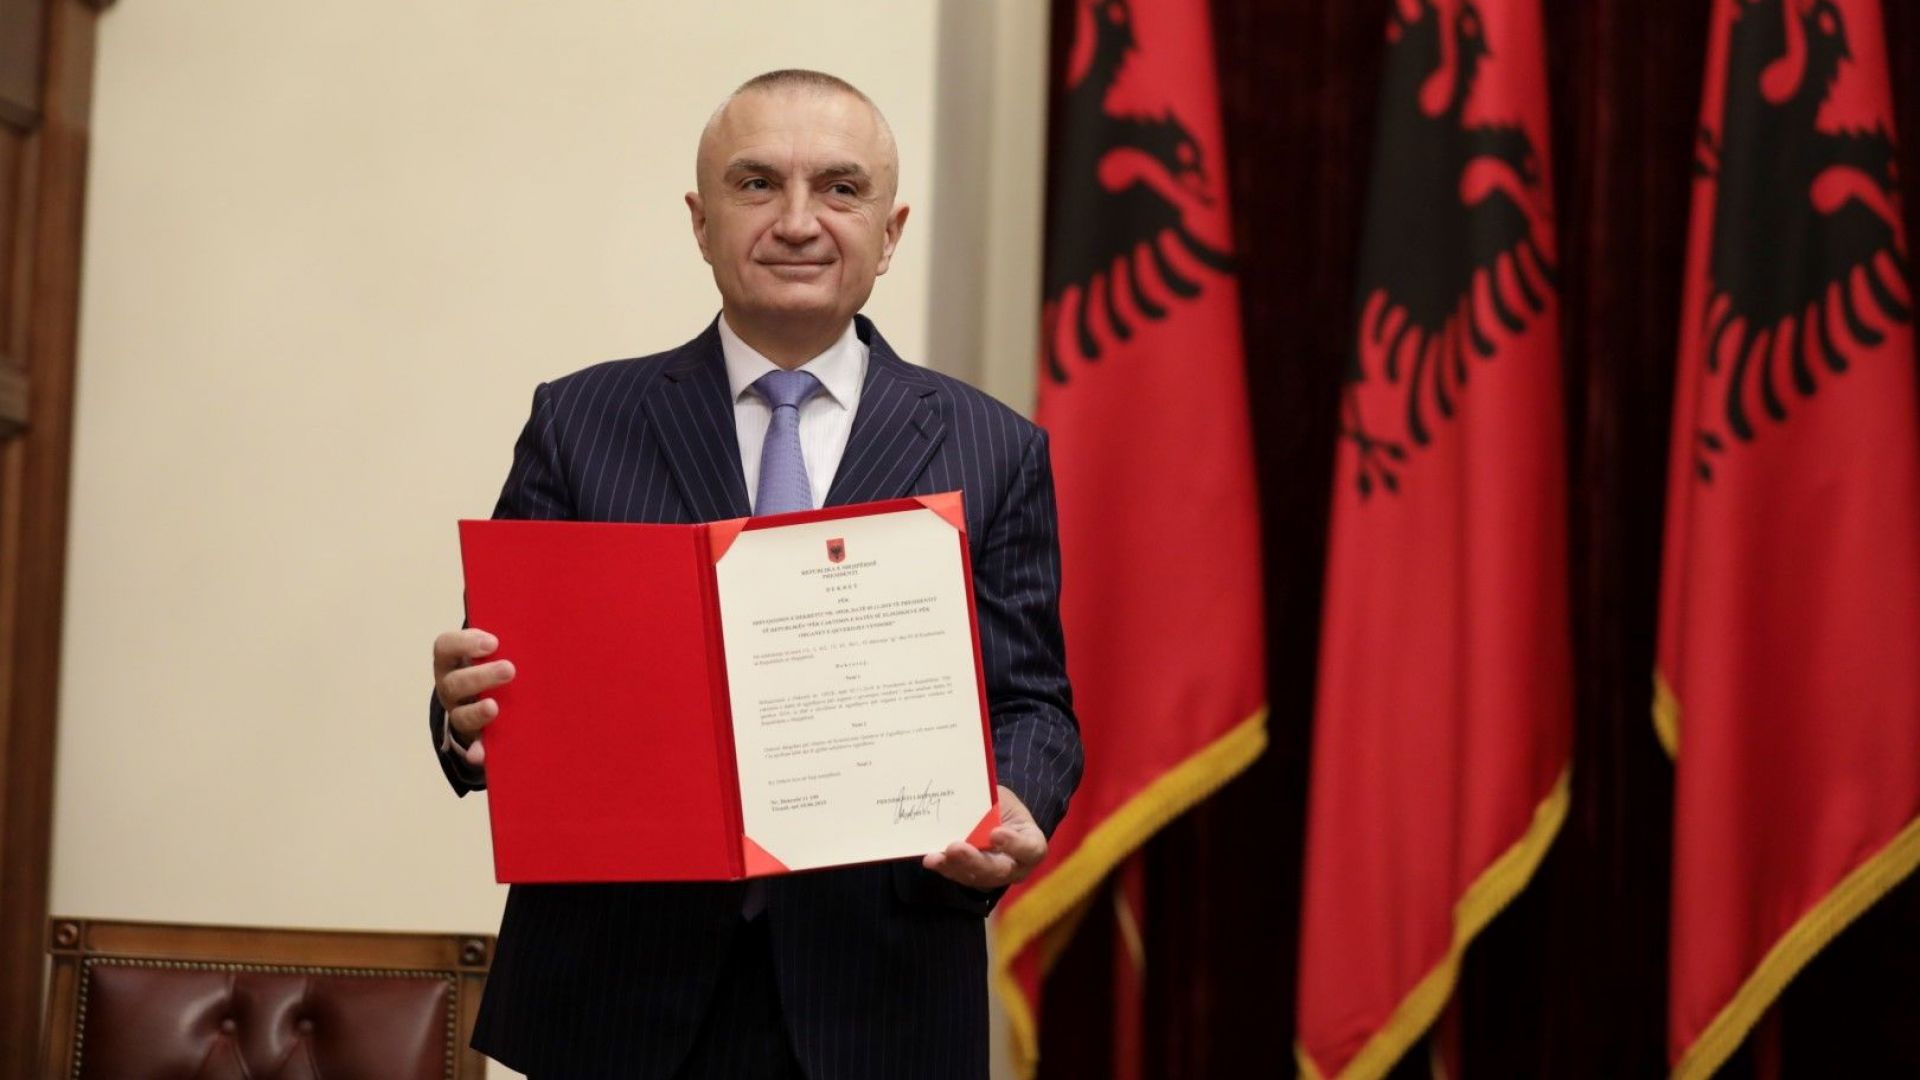  Илир Мета, президент на Албания 